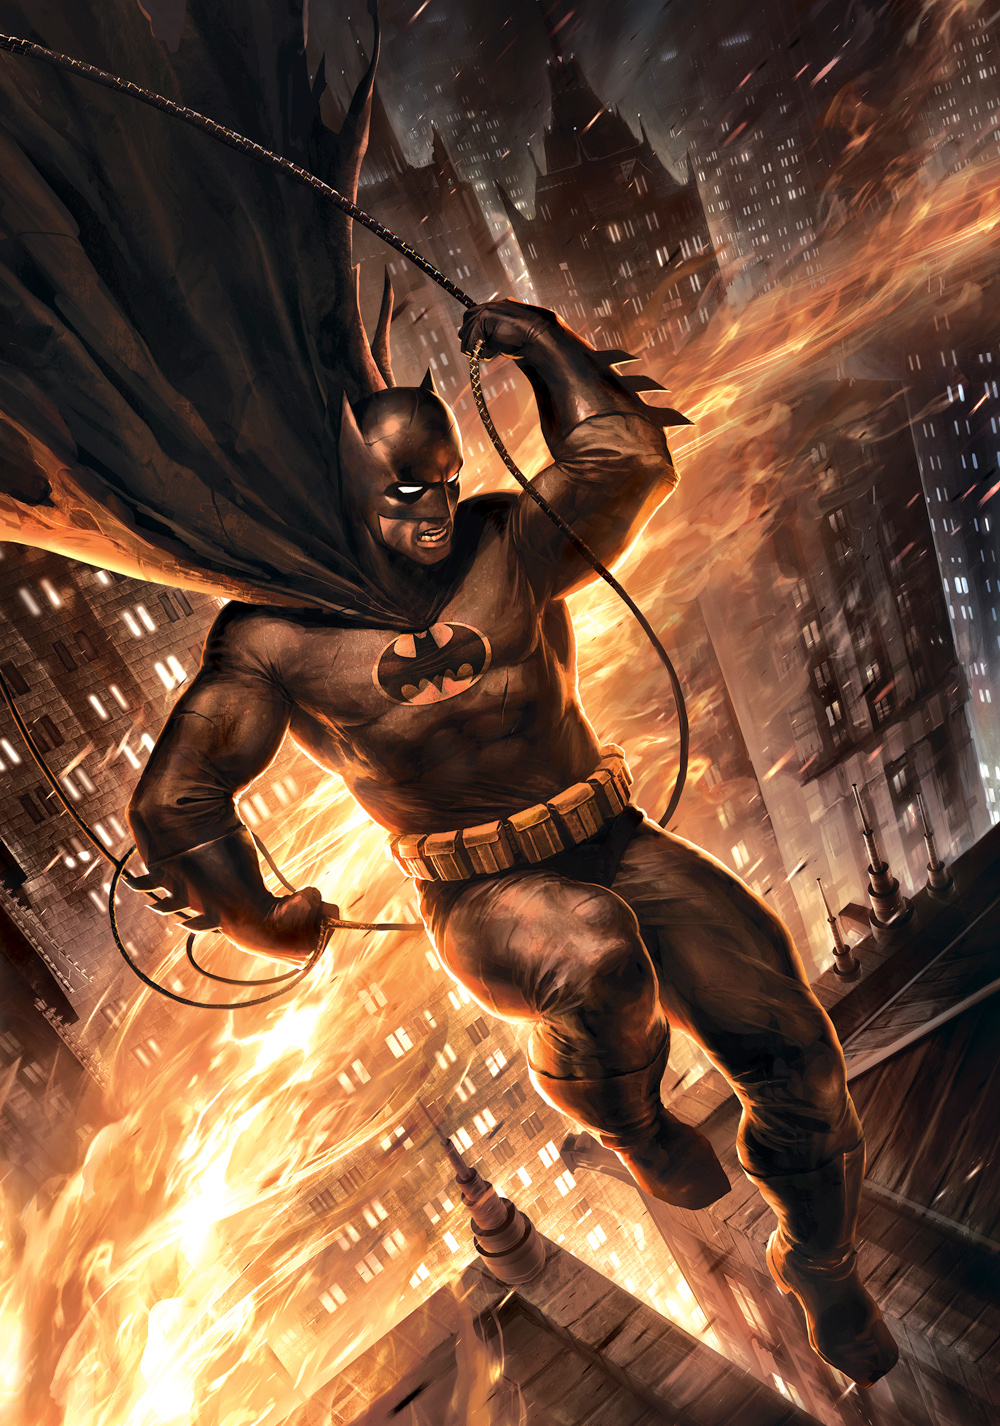 Batman: The Dark Knight Returns 2 Art